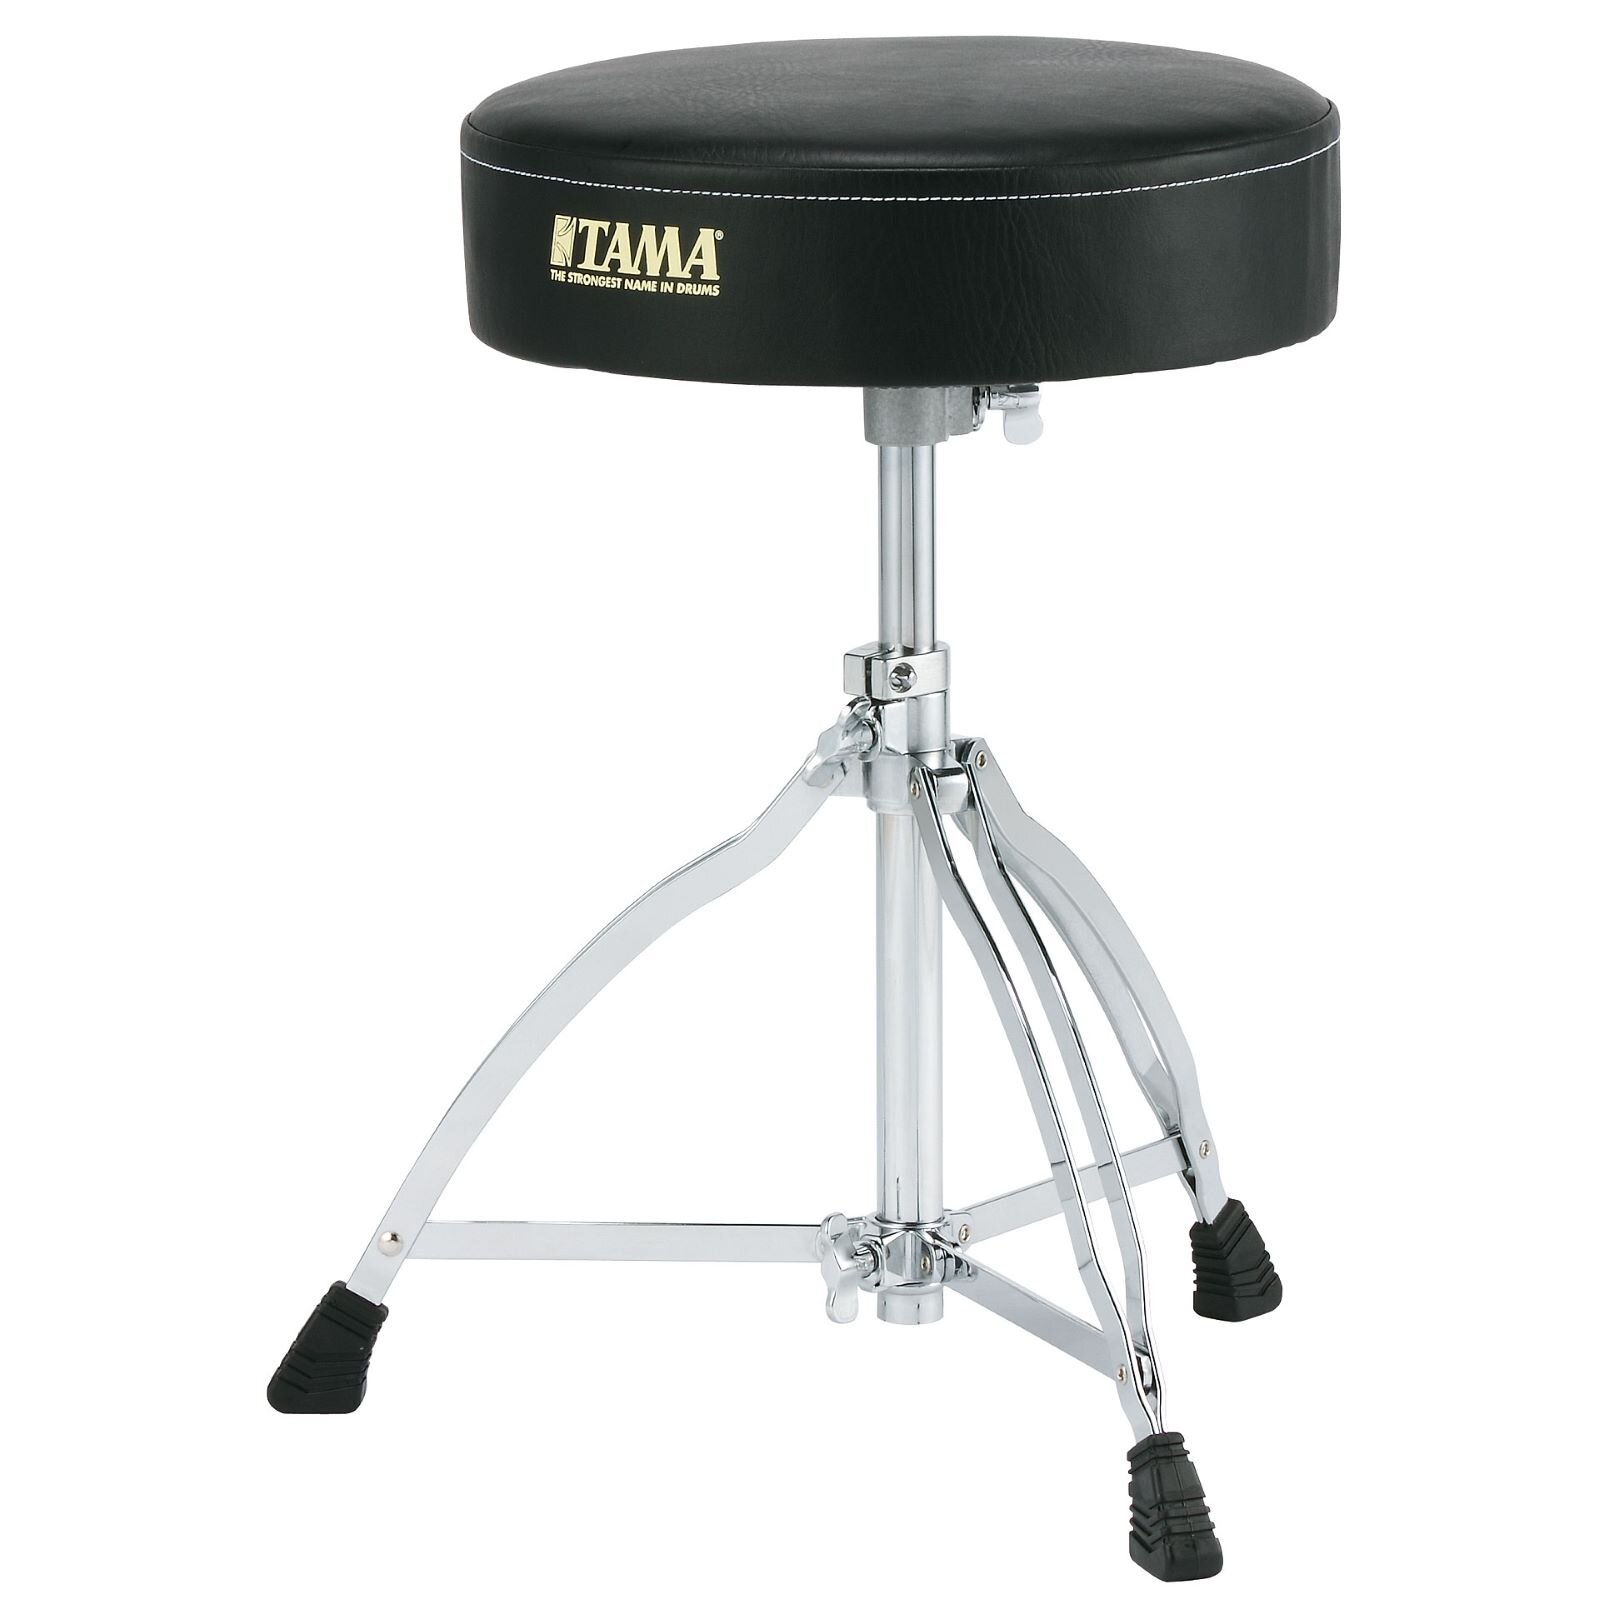 Tama Limited Edition Drum Throne Schwarz (HT130) : photo 1